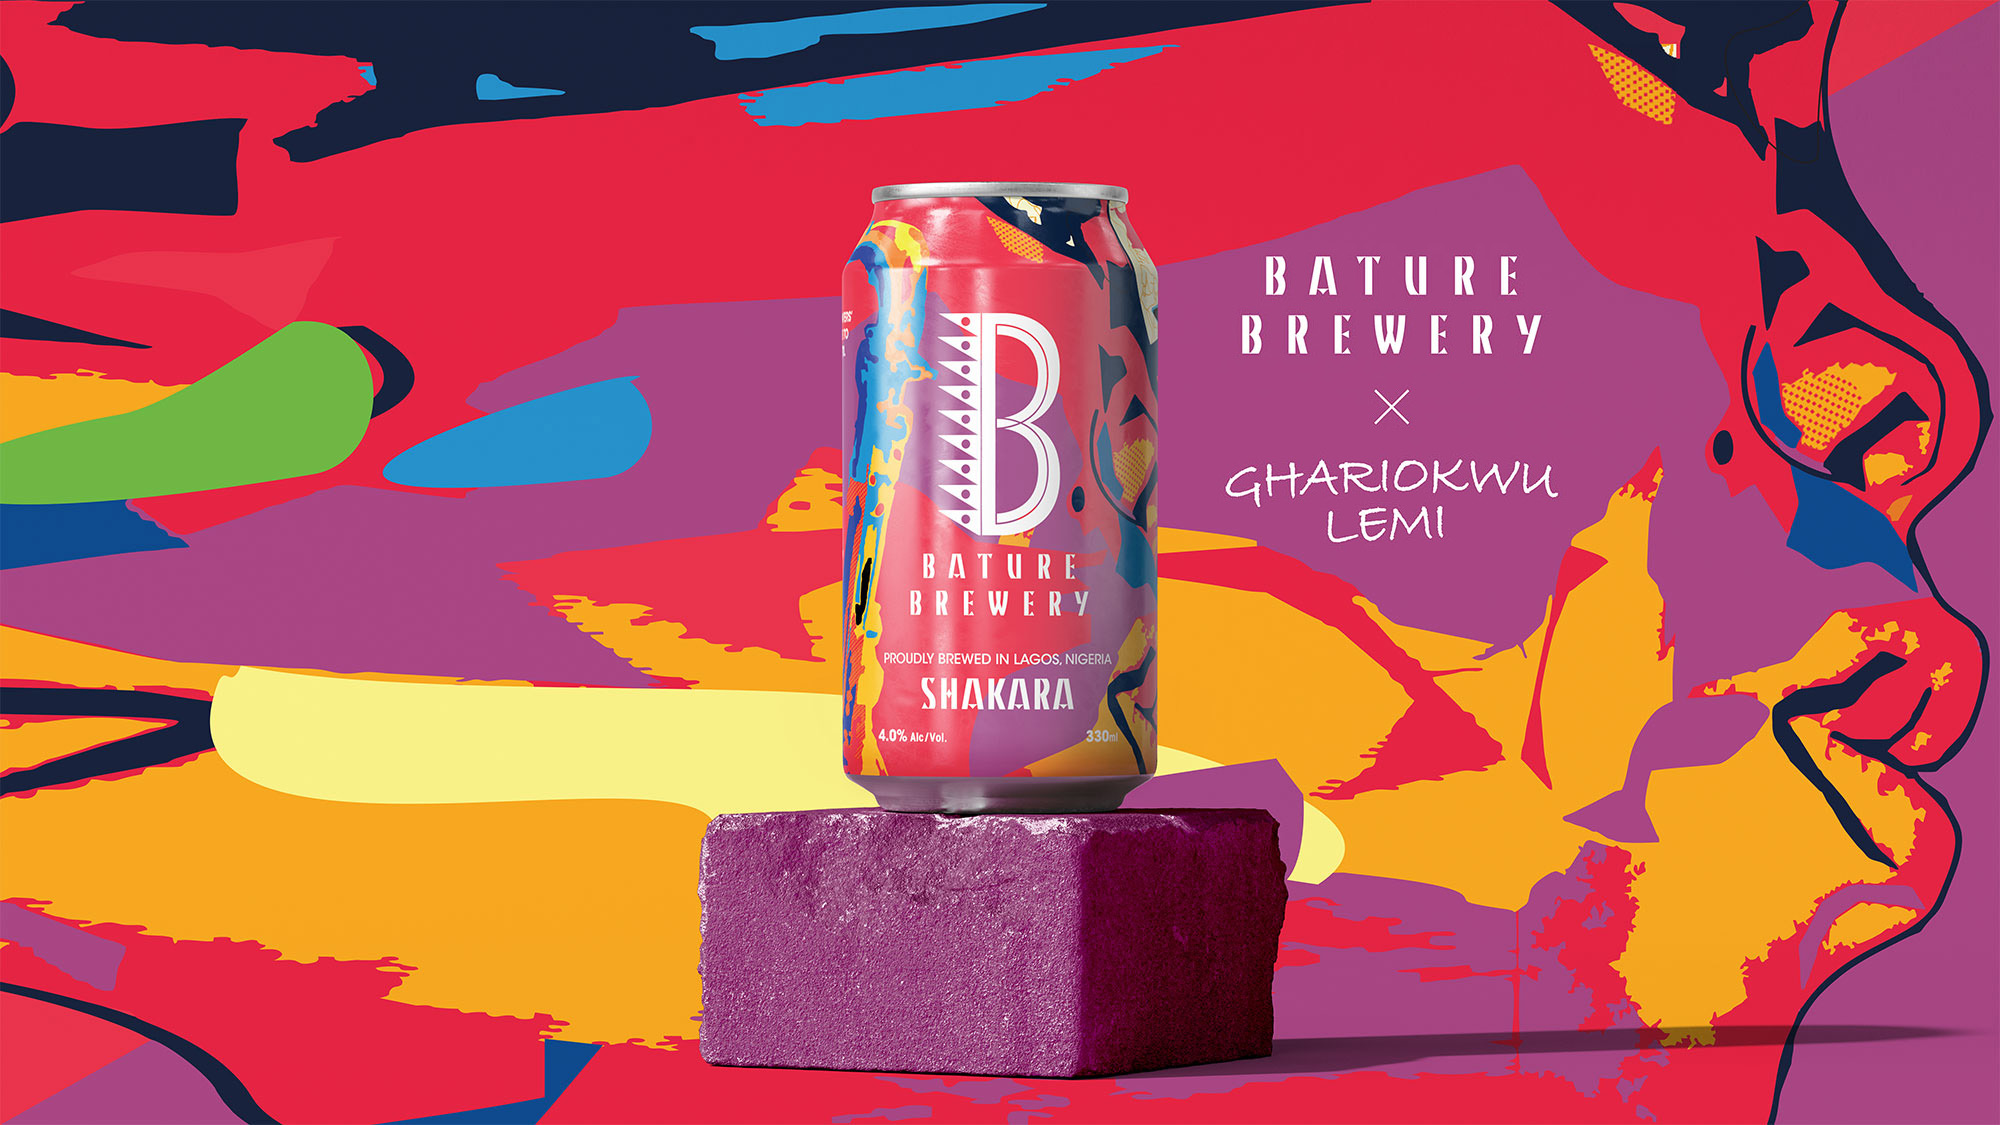 Bature Brewery: Elevating Nigerian Craft Beer with Lemi Ghariokwu